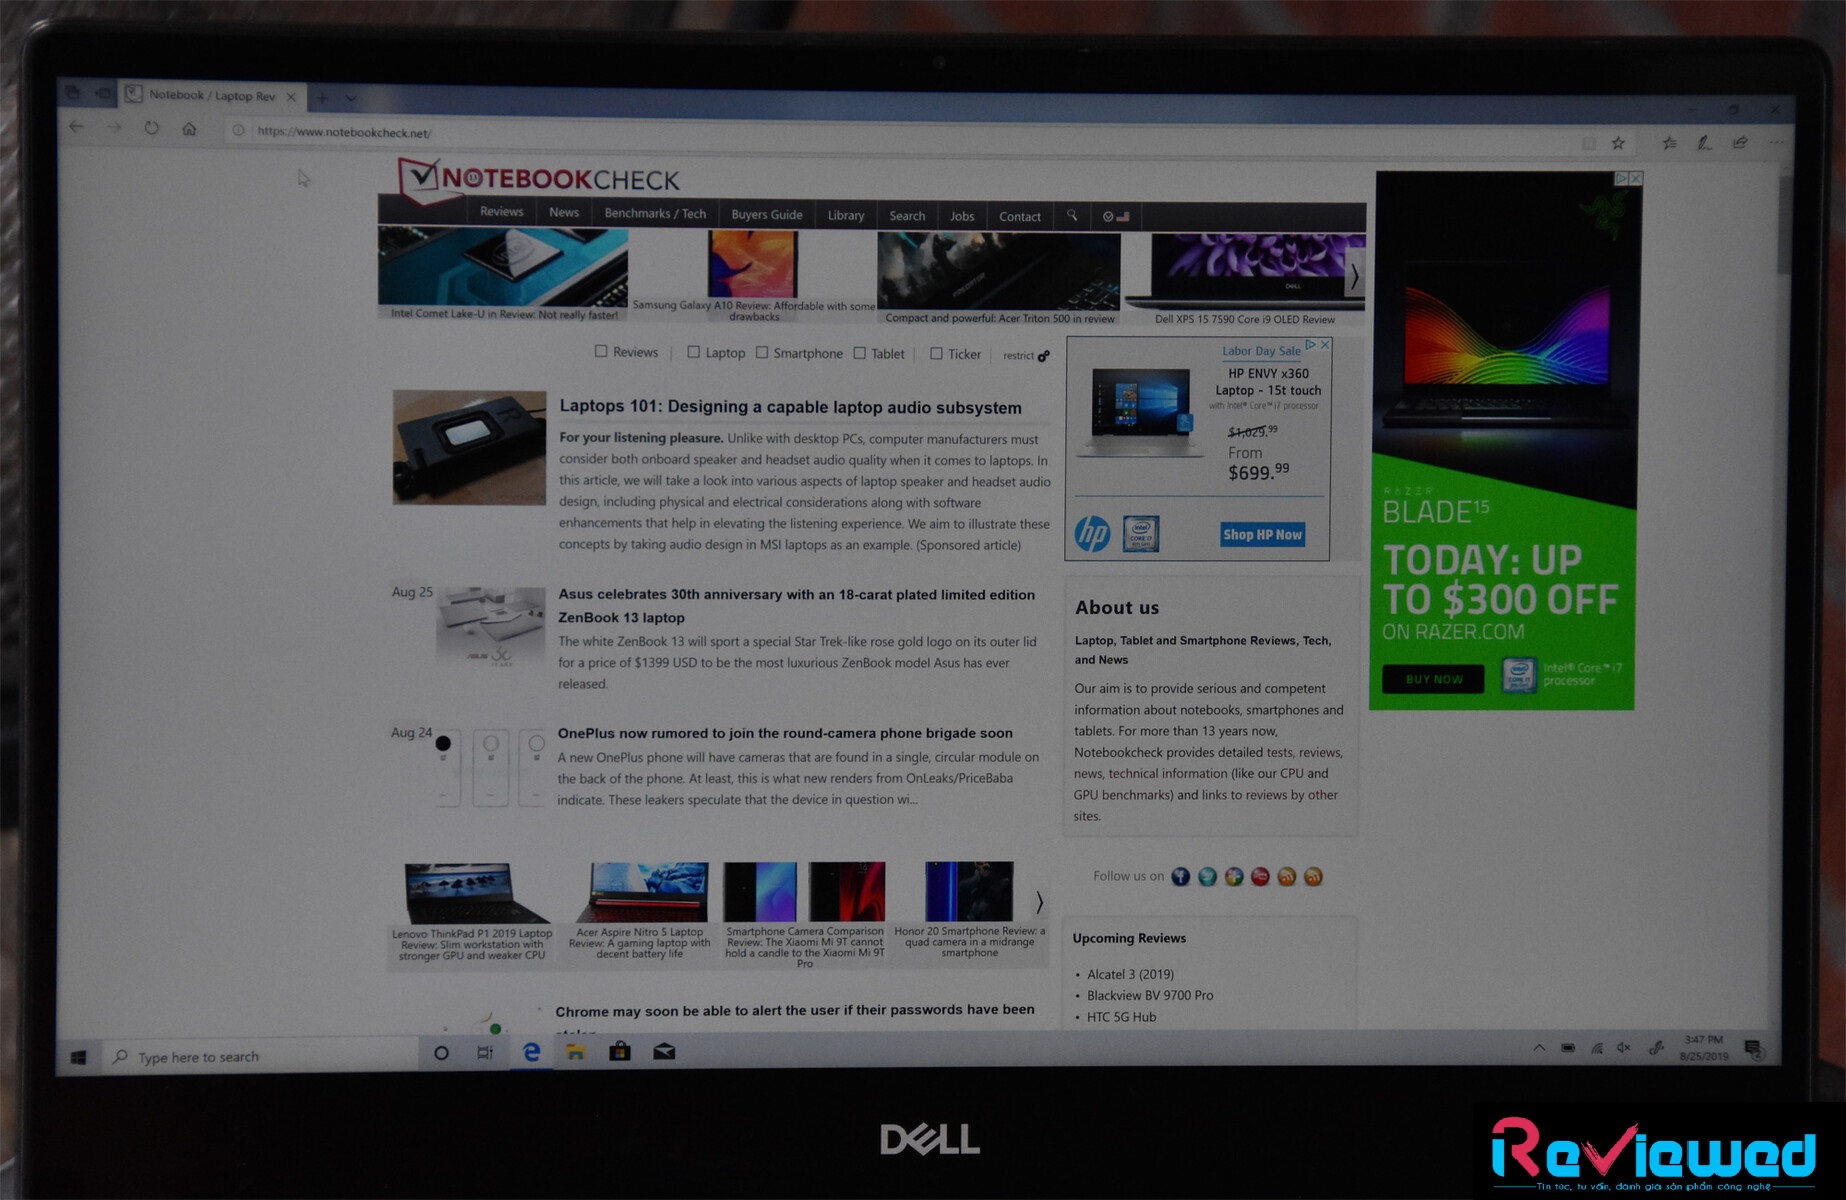 Đánh giá Dell Inspiron 7390 2 in 1 Black Edition: Nâng cấp hợp lý, Chuyên trang tư vấn laptop